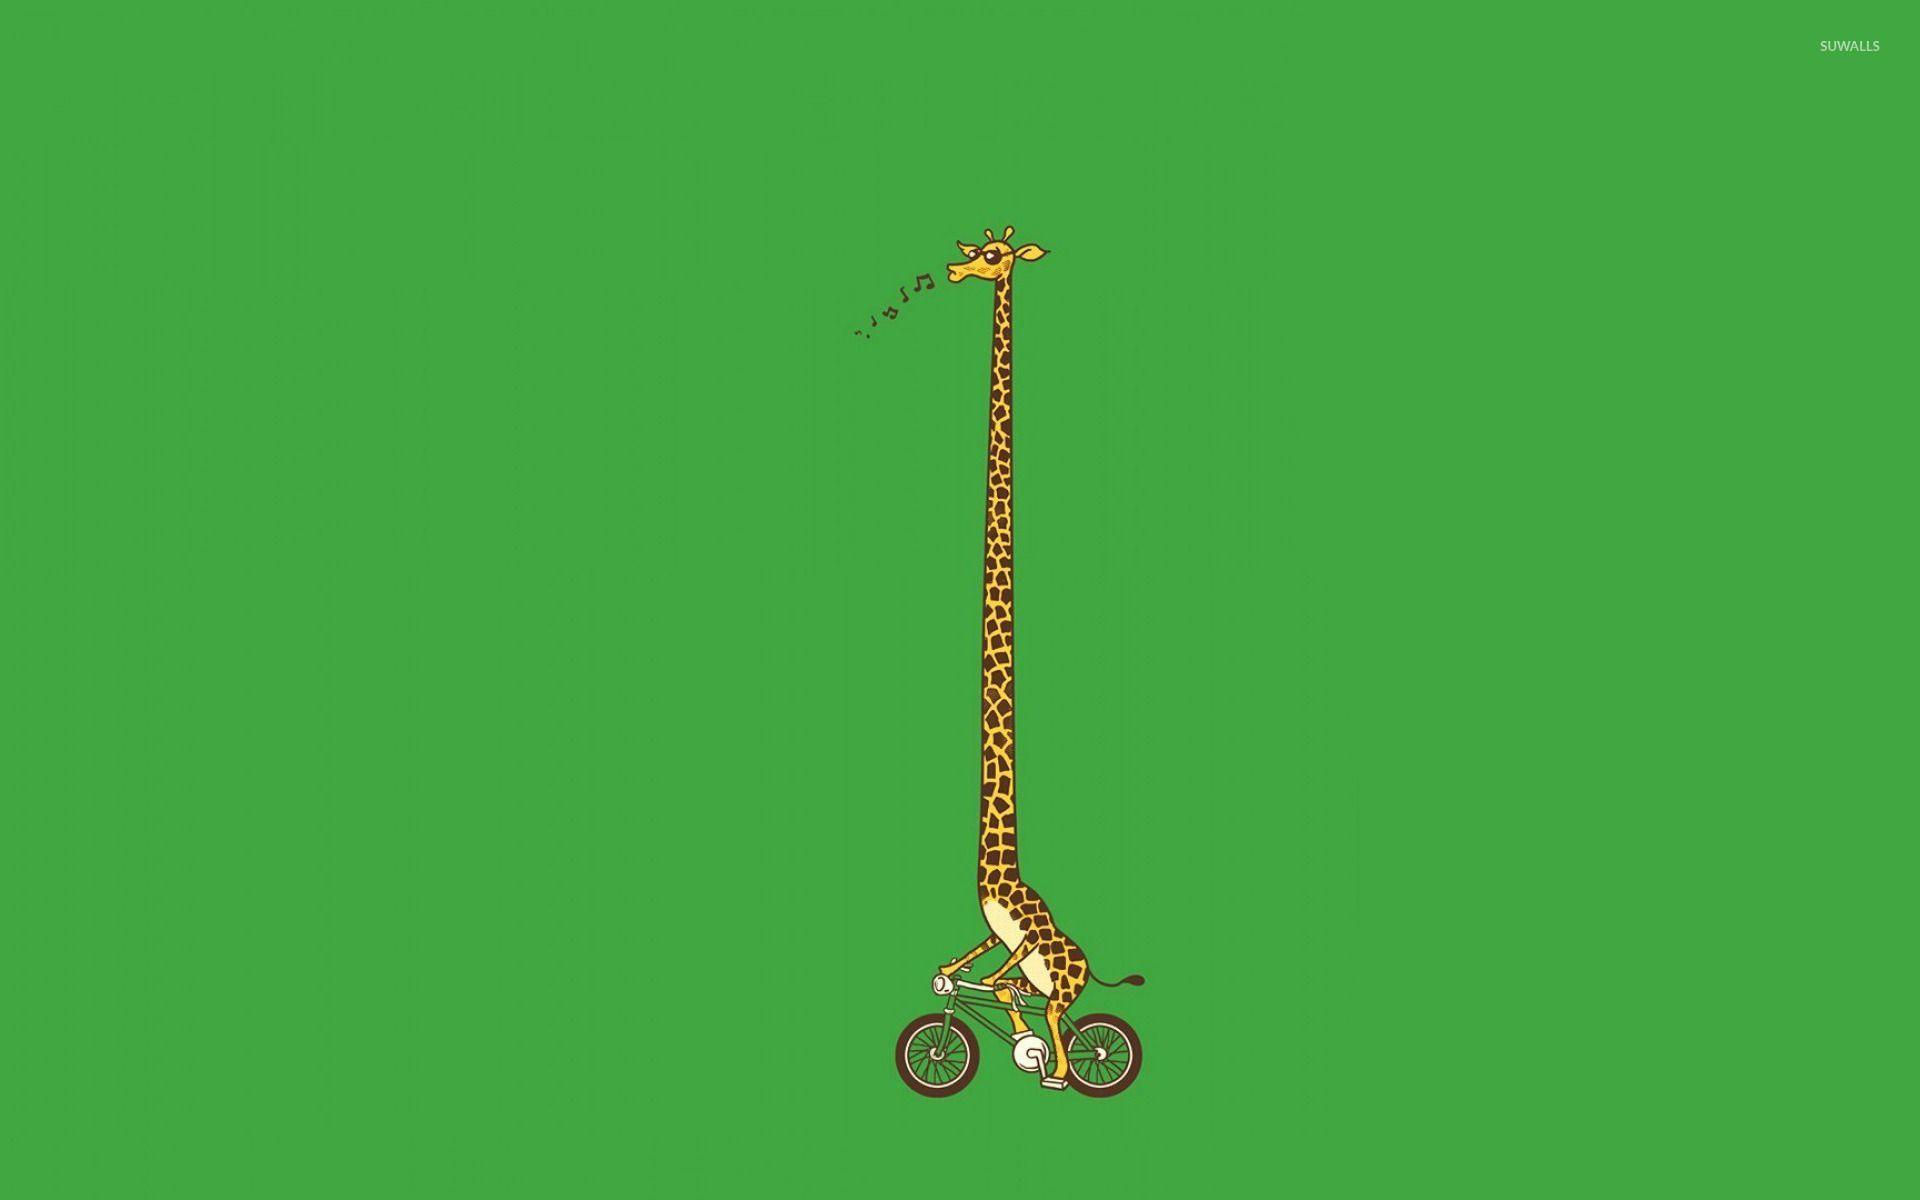 Biking giraffe wallpaper wallpaper